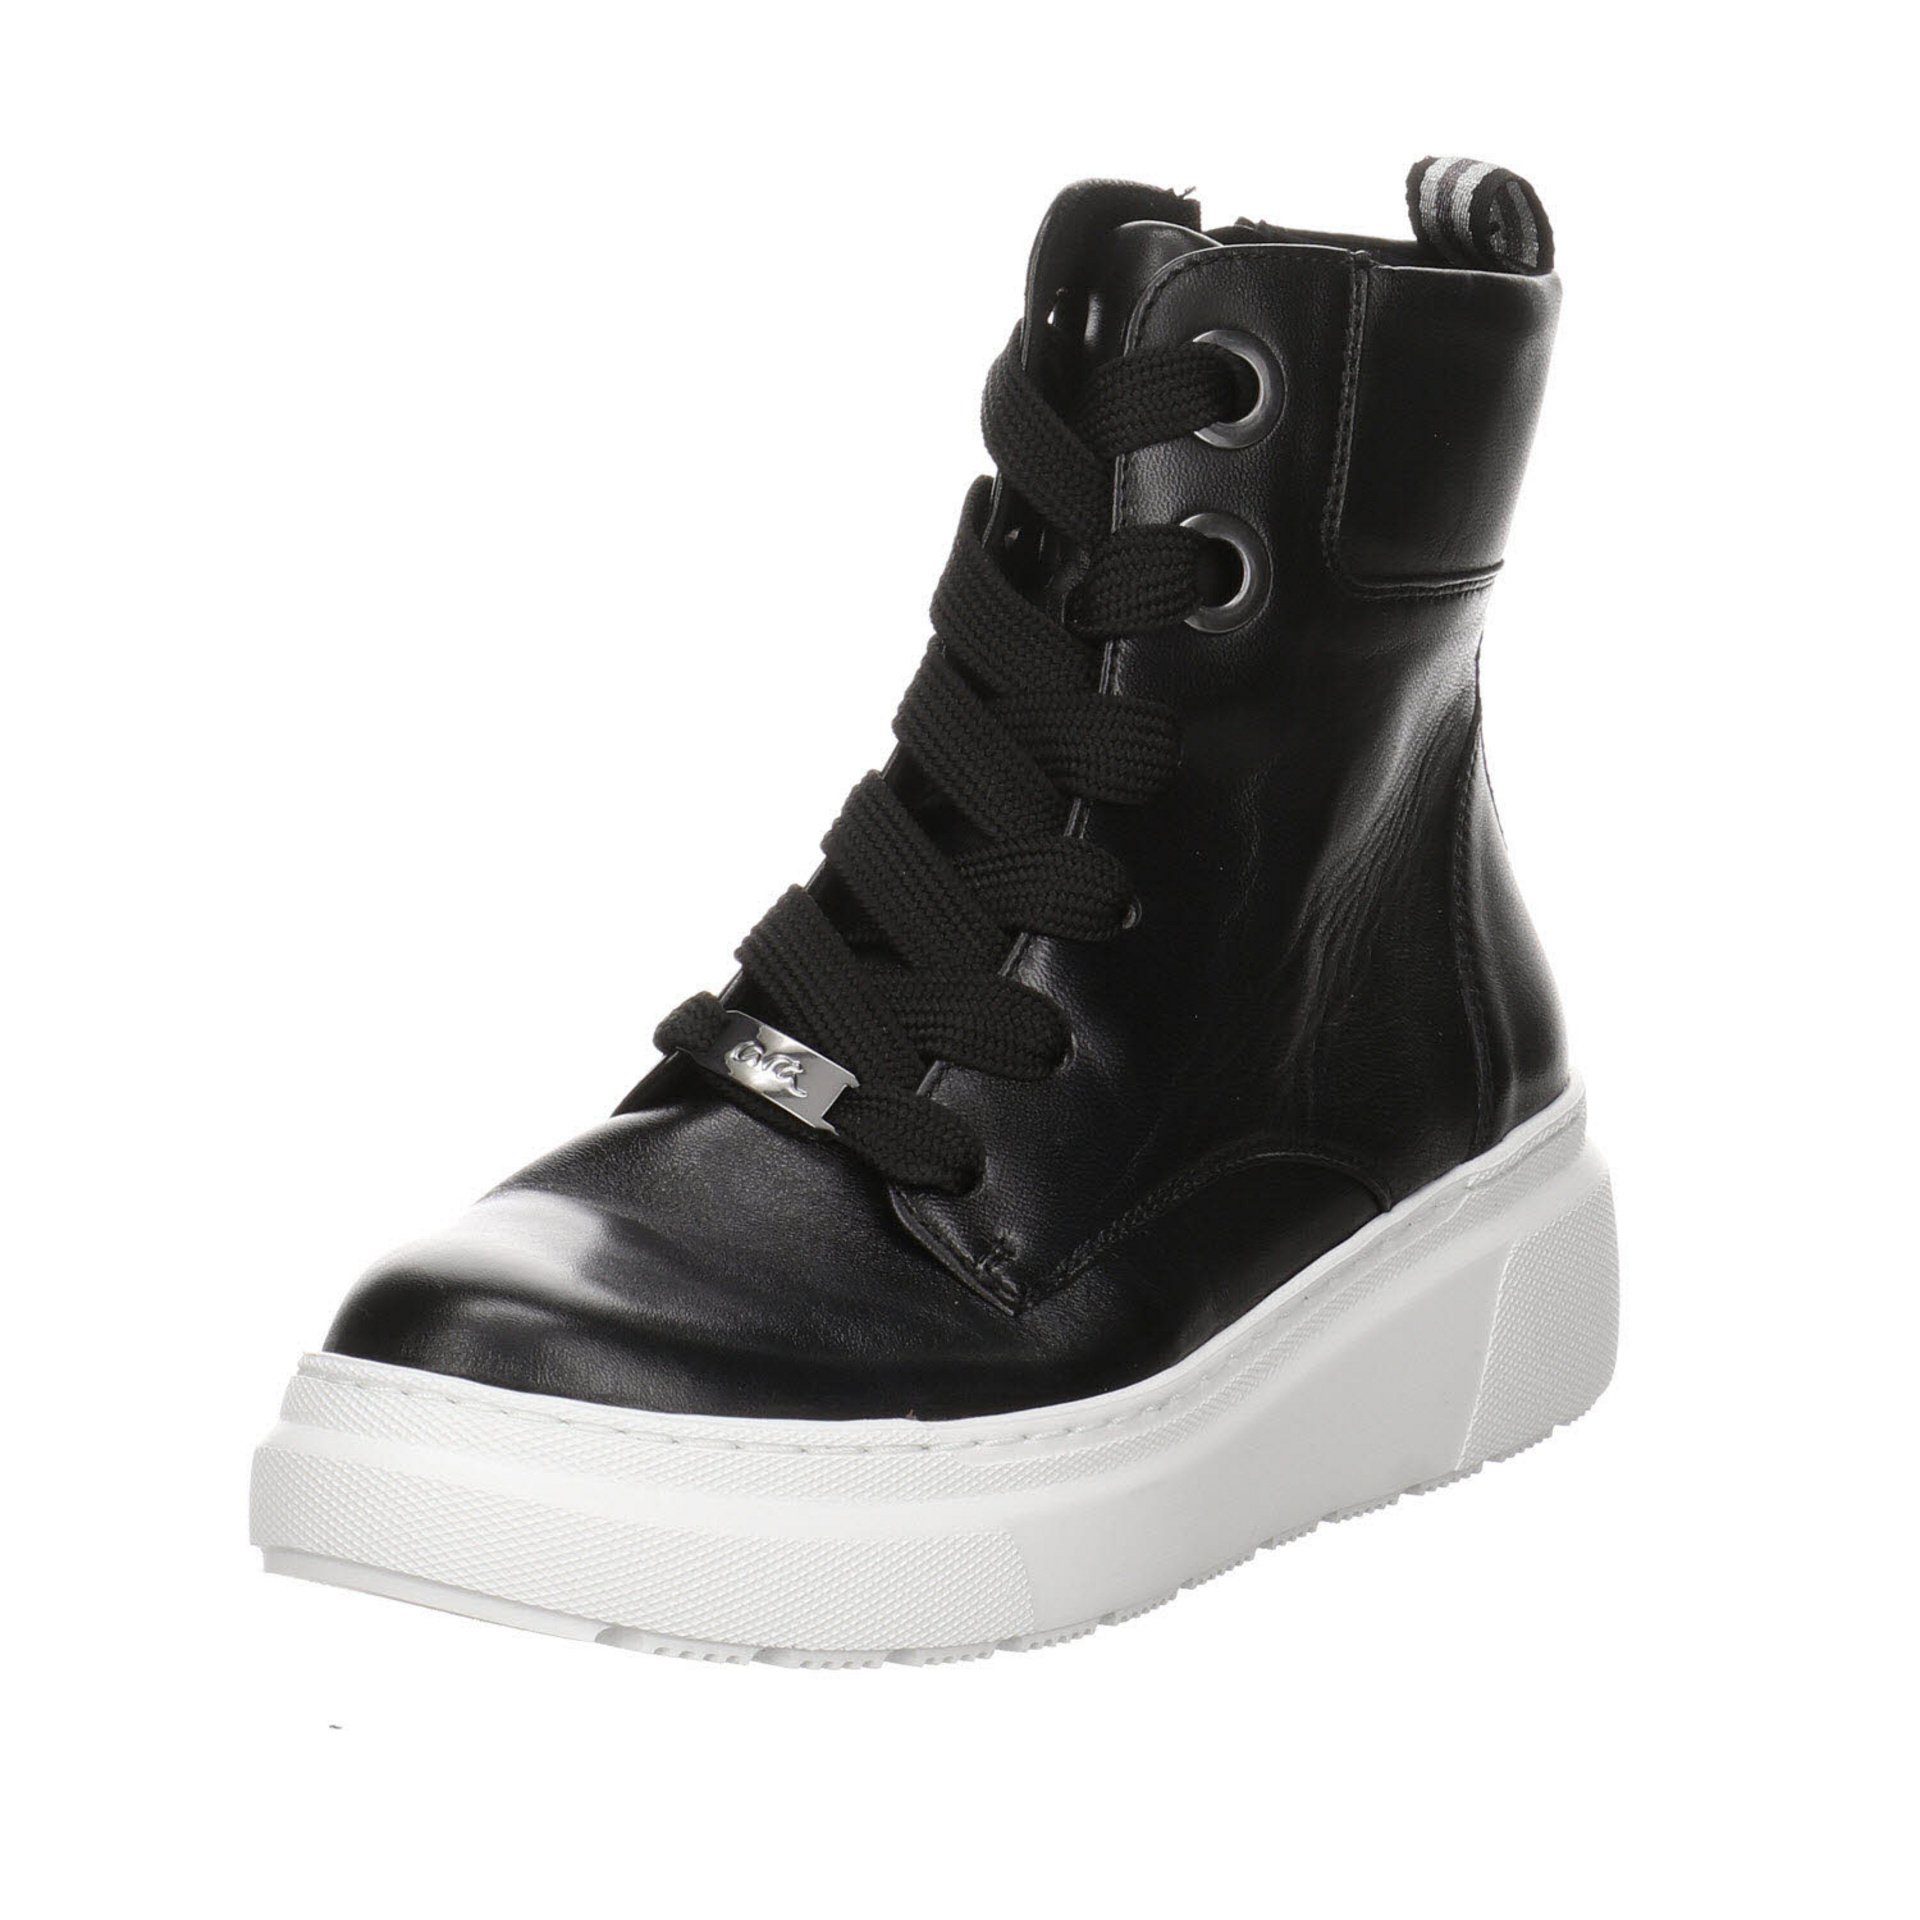 Schuhe Stiefeletten Ara Lausanne-Highsoft Textil dunkel Schnürstiefelette Damen schwarz